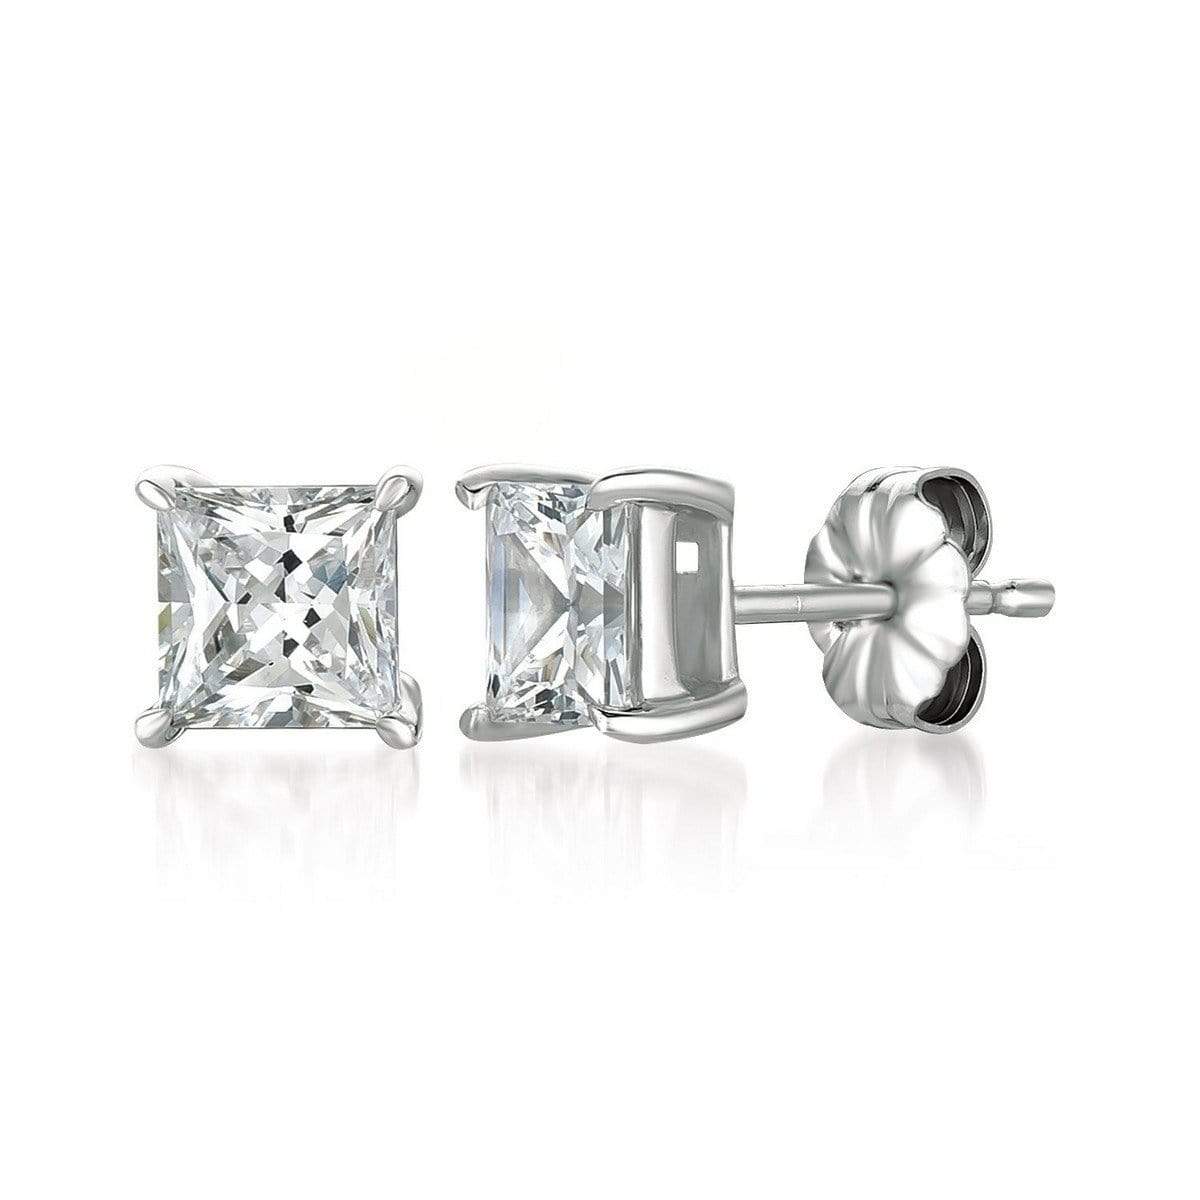 Crislu Jewelry CRISLU Solitaire Princess Earrings 2.50 Carat Finished in Pure Platinum